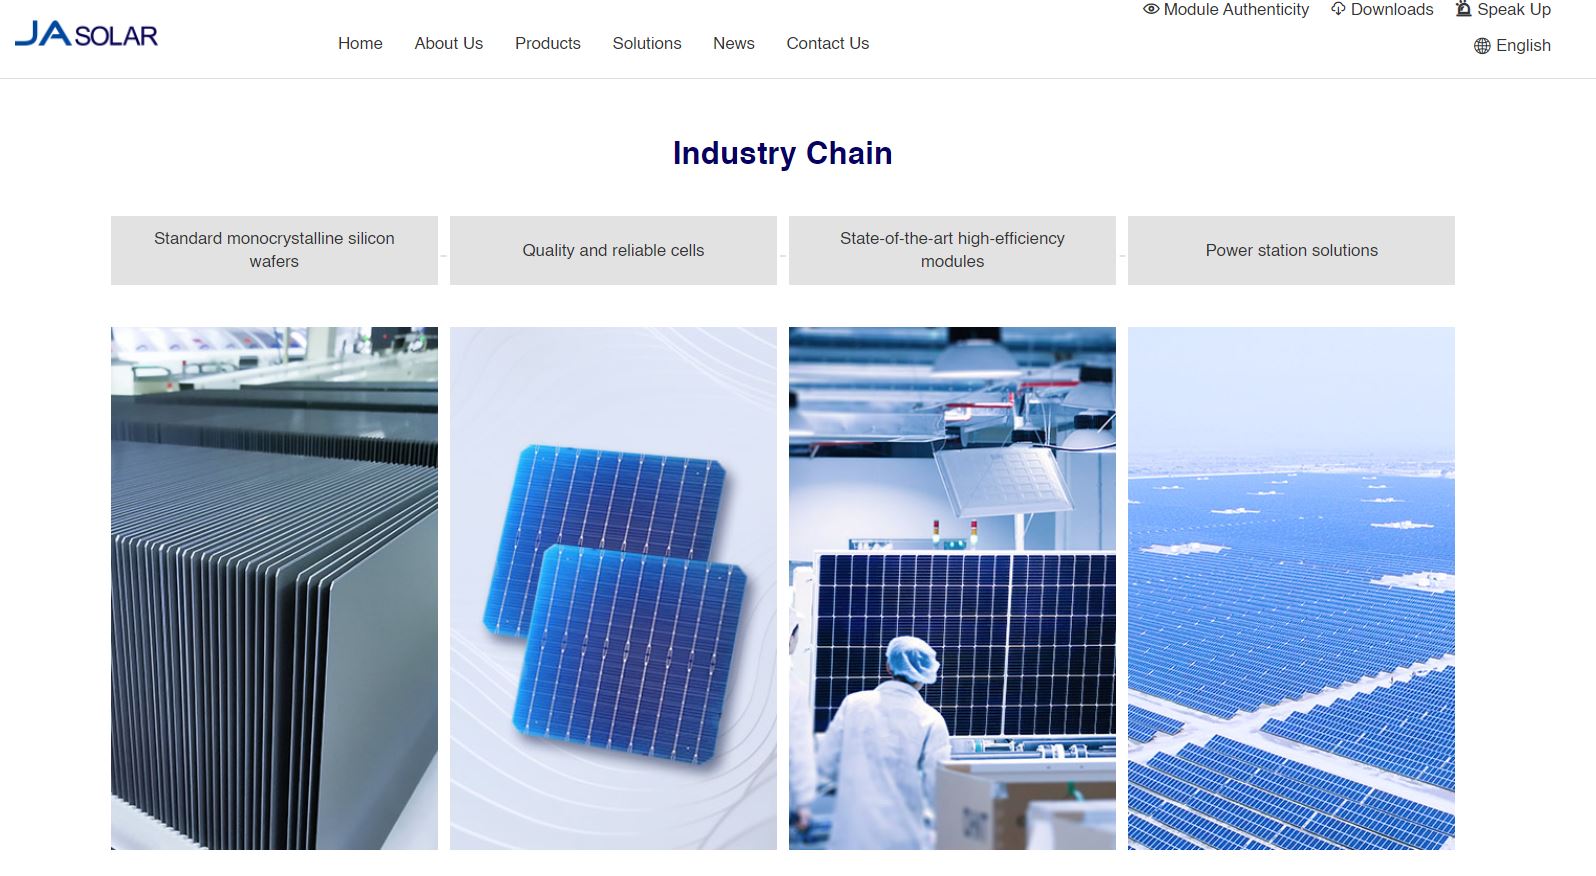 La page d'accueil du site Web du fournisseur de solutions solaires Jasolar, contenant des informations sur leurs services en tant que fournisseur panneau solaire.